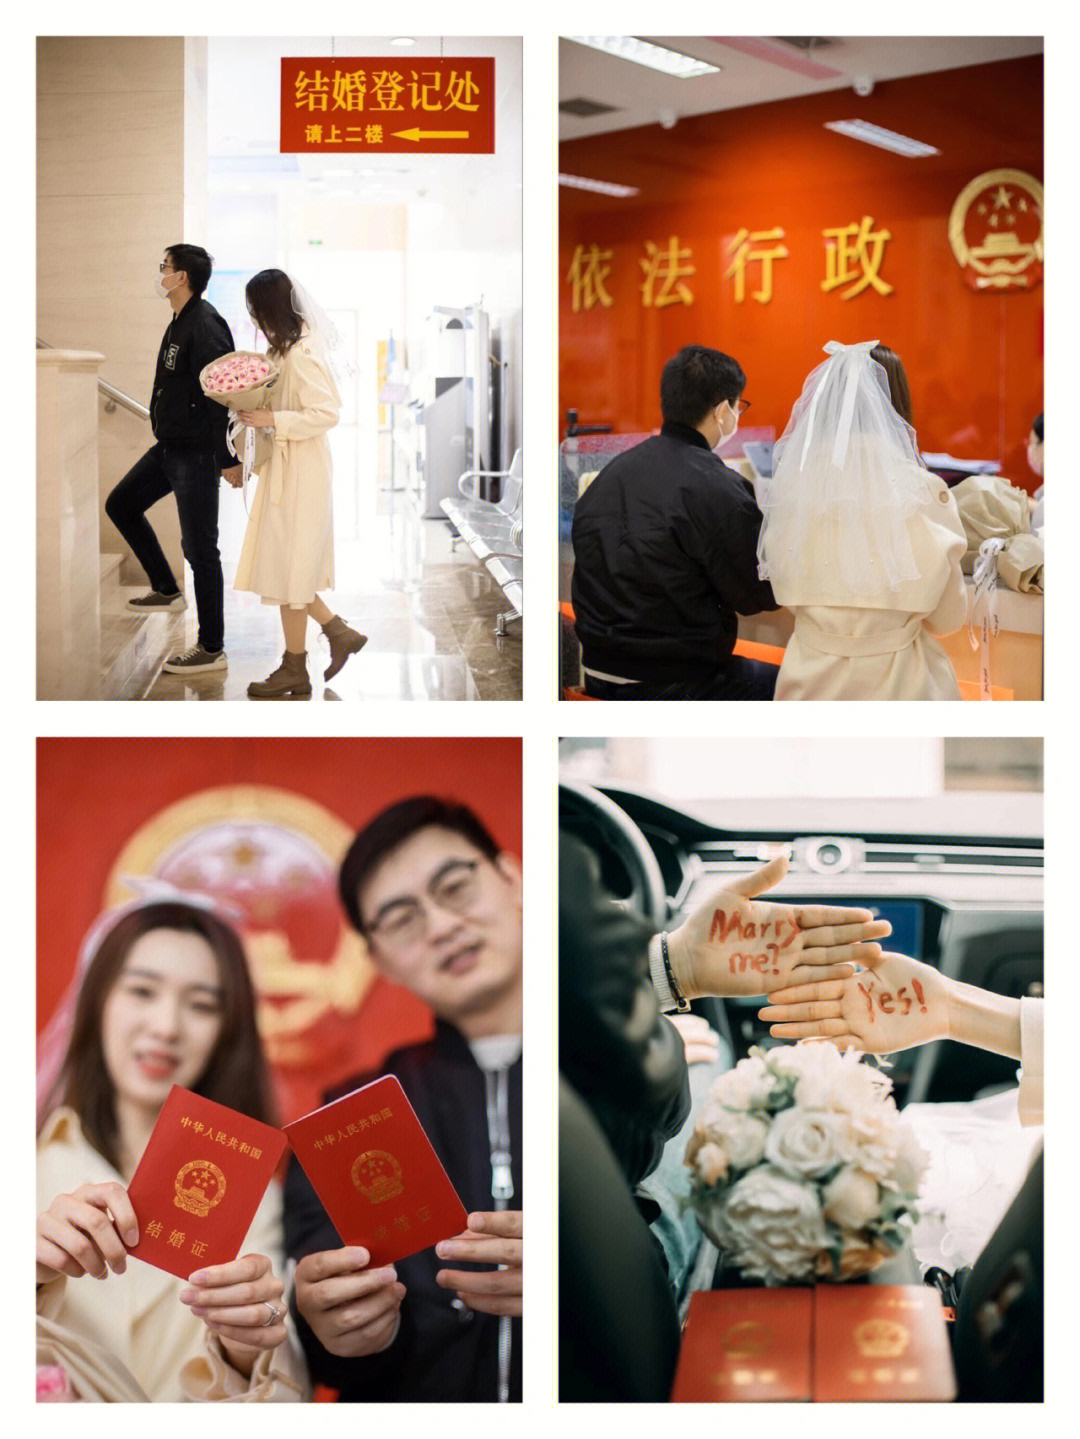 18地点:武清区婚姻登记处这个地方摄影师能进去,天津很多民政局不让